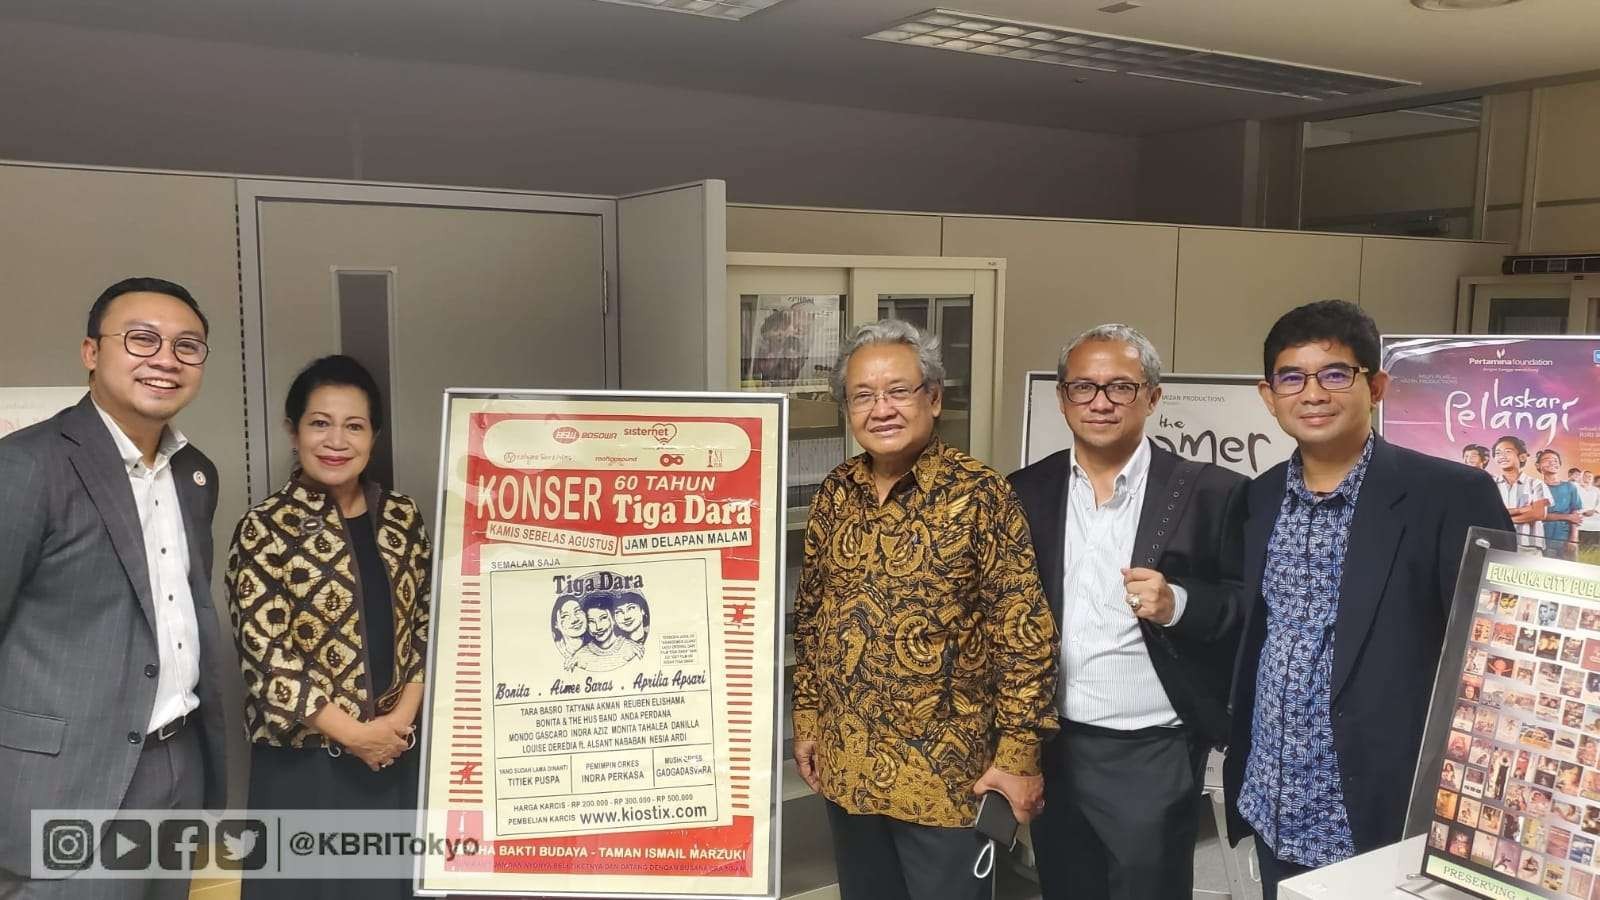 Film Tiga Dara akan diputar dalam rangkaian kegiatan Indonesia Friendship Day (IFD) di Fukuoka, Jepang, yang direncanakan akan diselenggarakan pada awal November 2022. (Foto: Dokumentasi KBRI Tokyo)